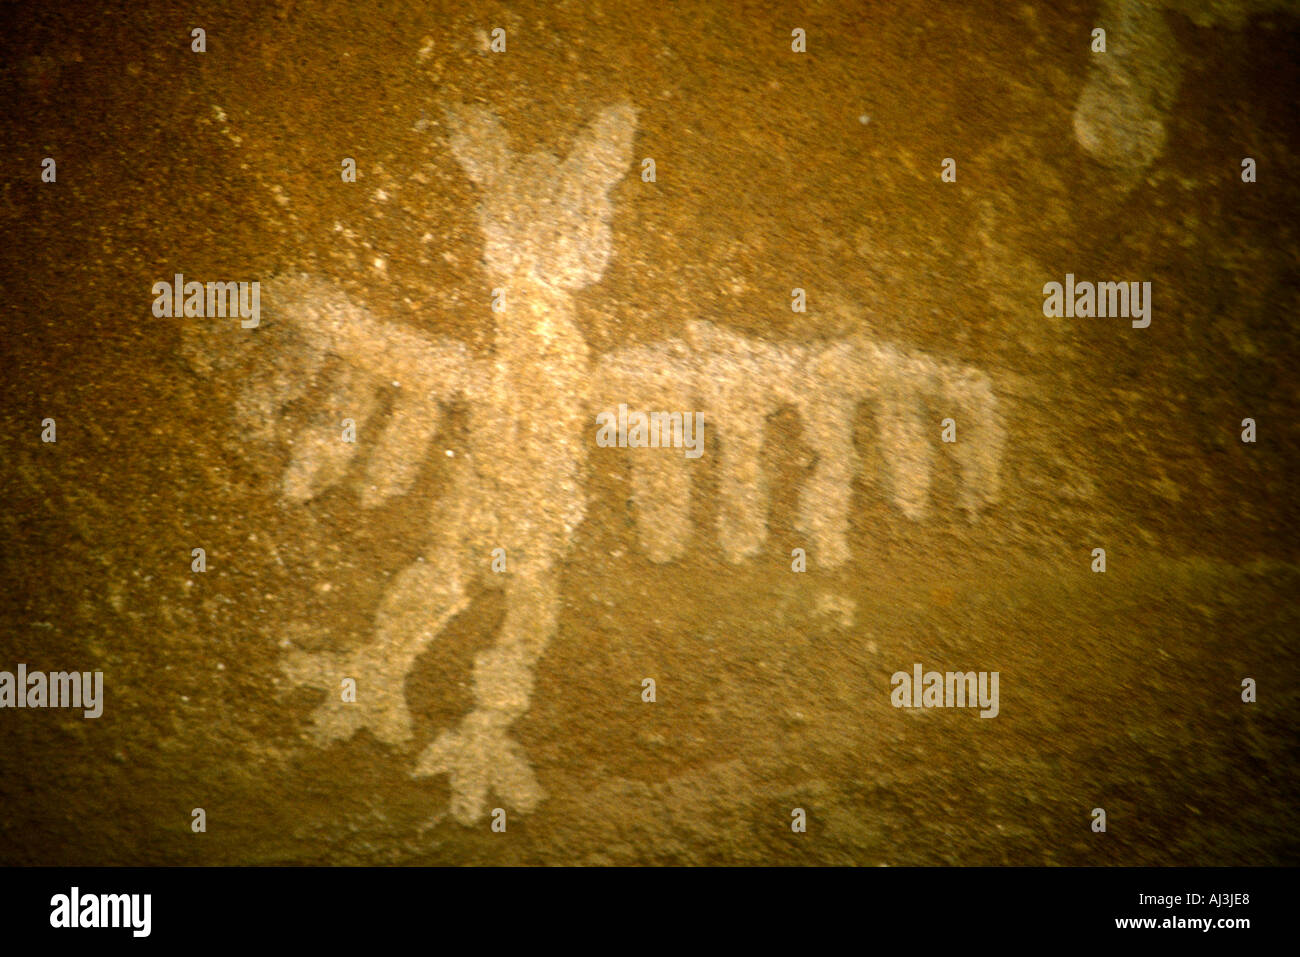 Le pictogramme Owl sur roches granitiques à Cerro Colorado à Cordoba, Argentine centrale Banque D'Images